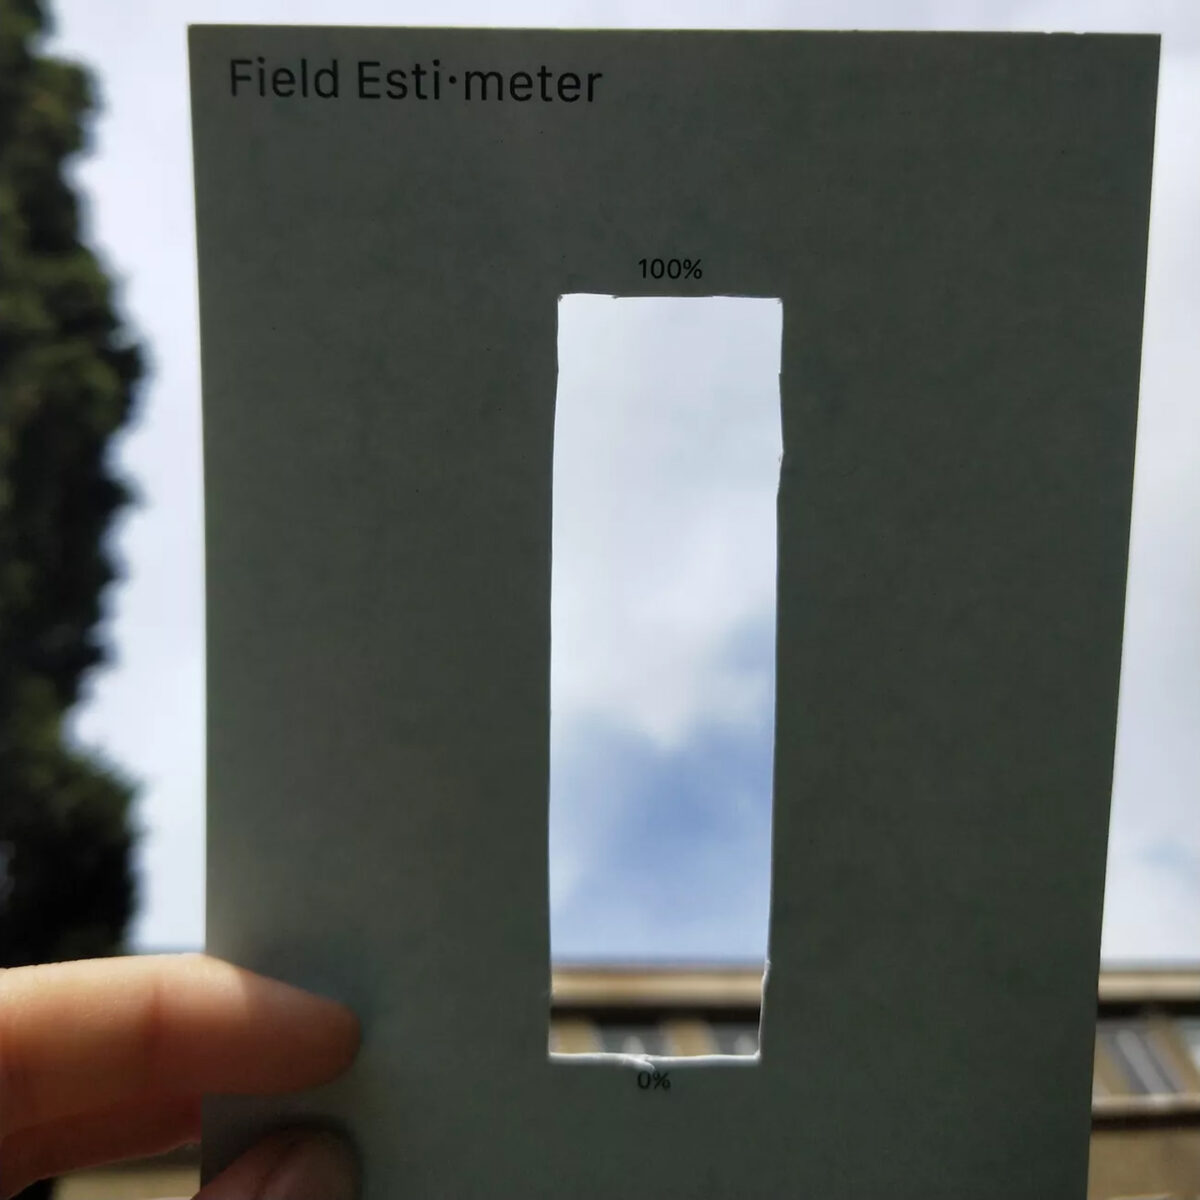 Finger halten eine Postkarte mit der Bezeichnung 'Field-Estimeter'. Die Karte hat ein längliches Loch, markiert mit '100%' oben und '0%' unten. Durch das Loch ist der Himmel und am unteren Rand ein grüner Horizont zu erkennen, was auf eine niedrige Schätzung hinweist.